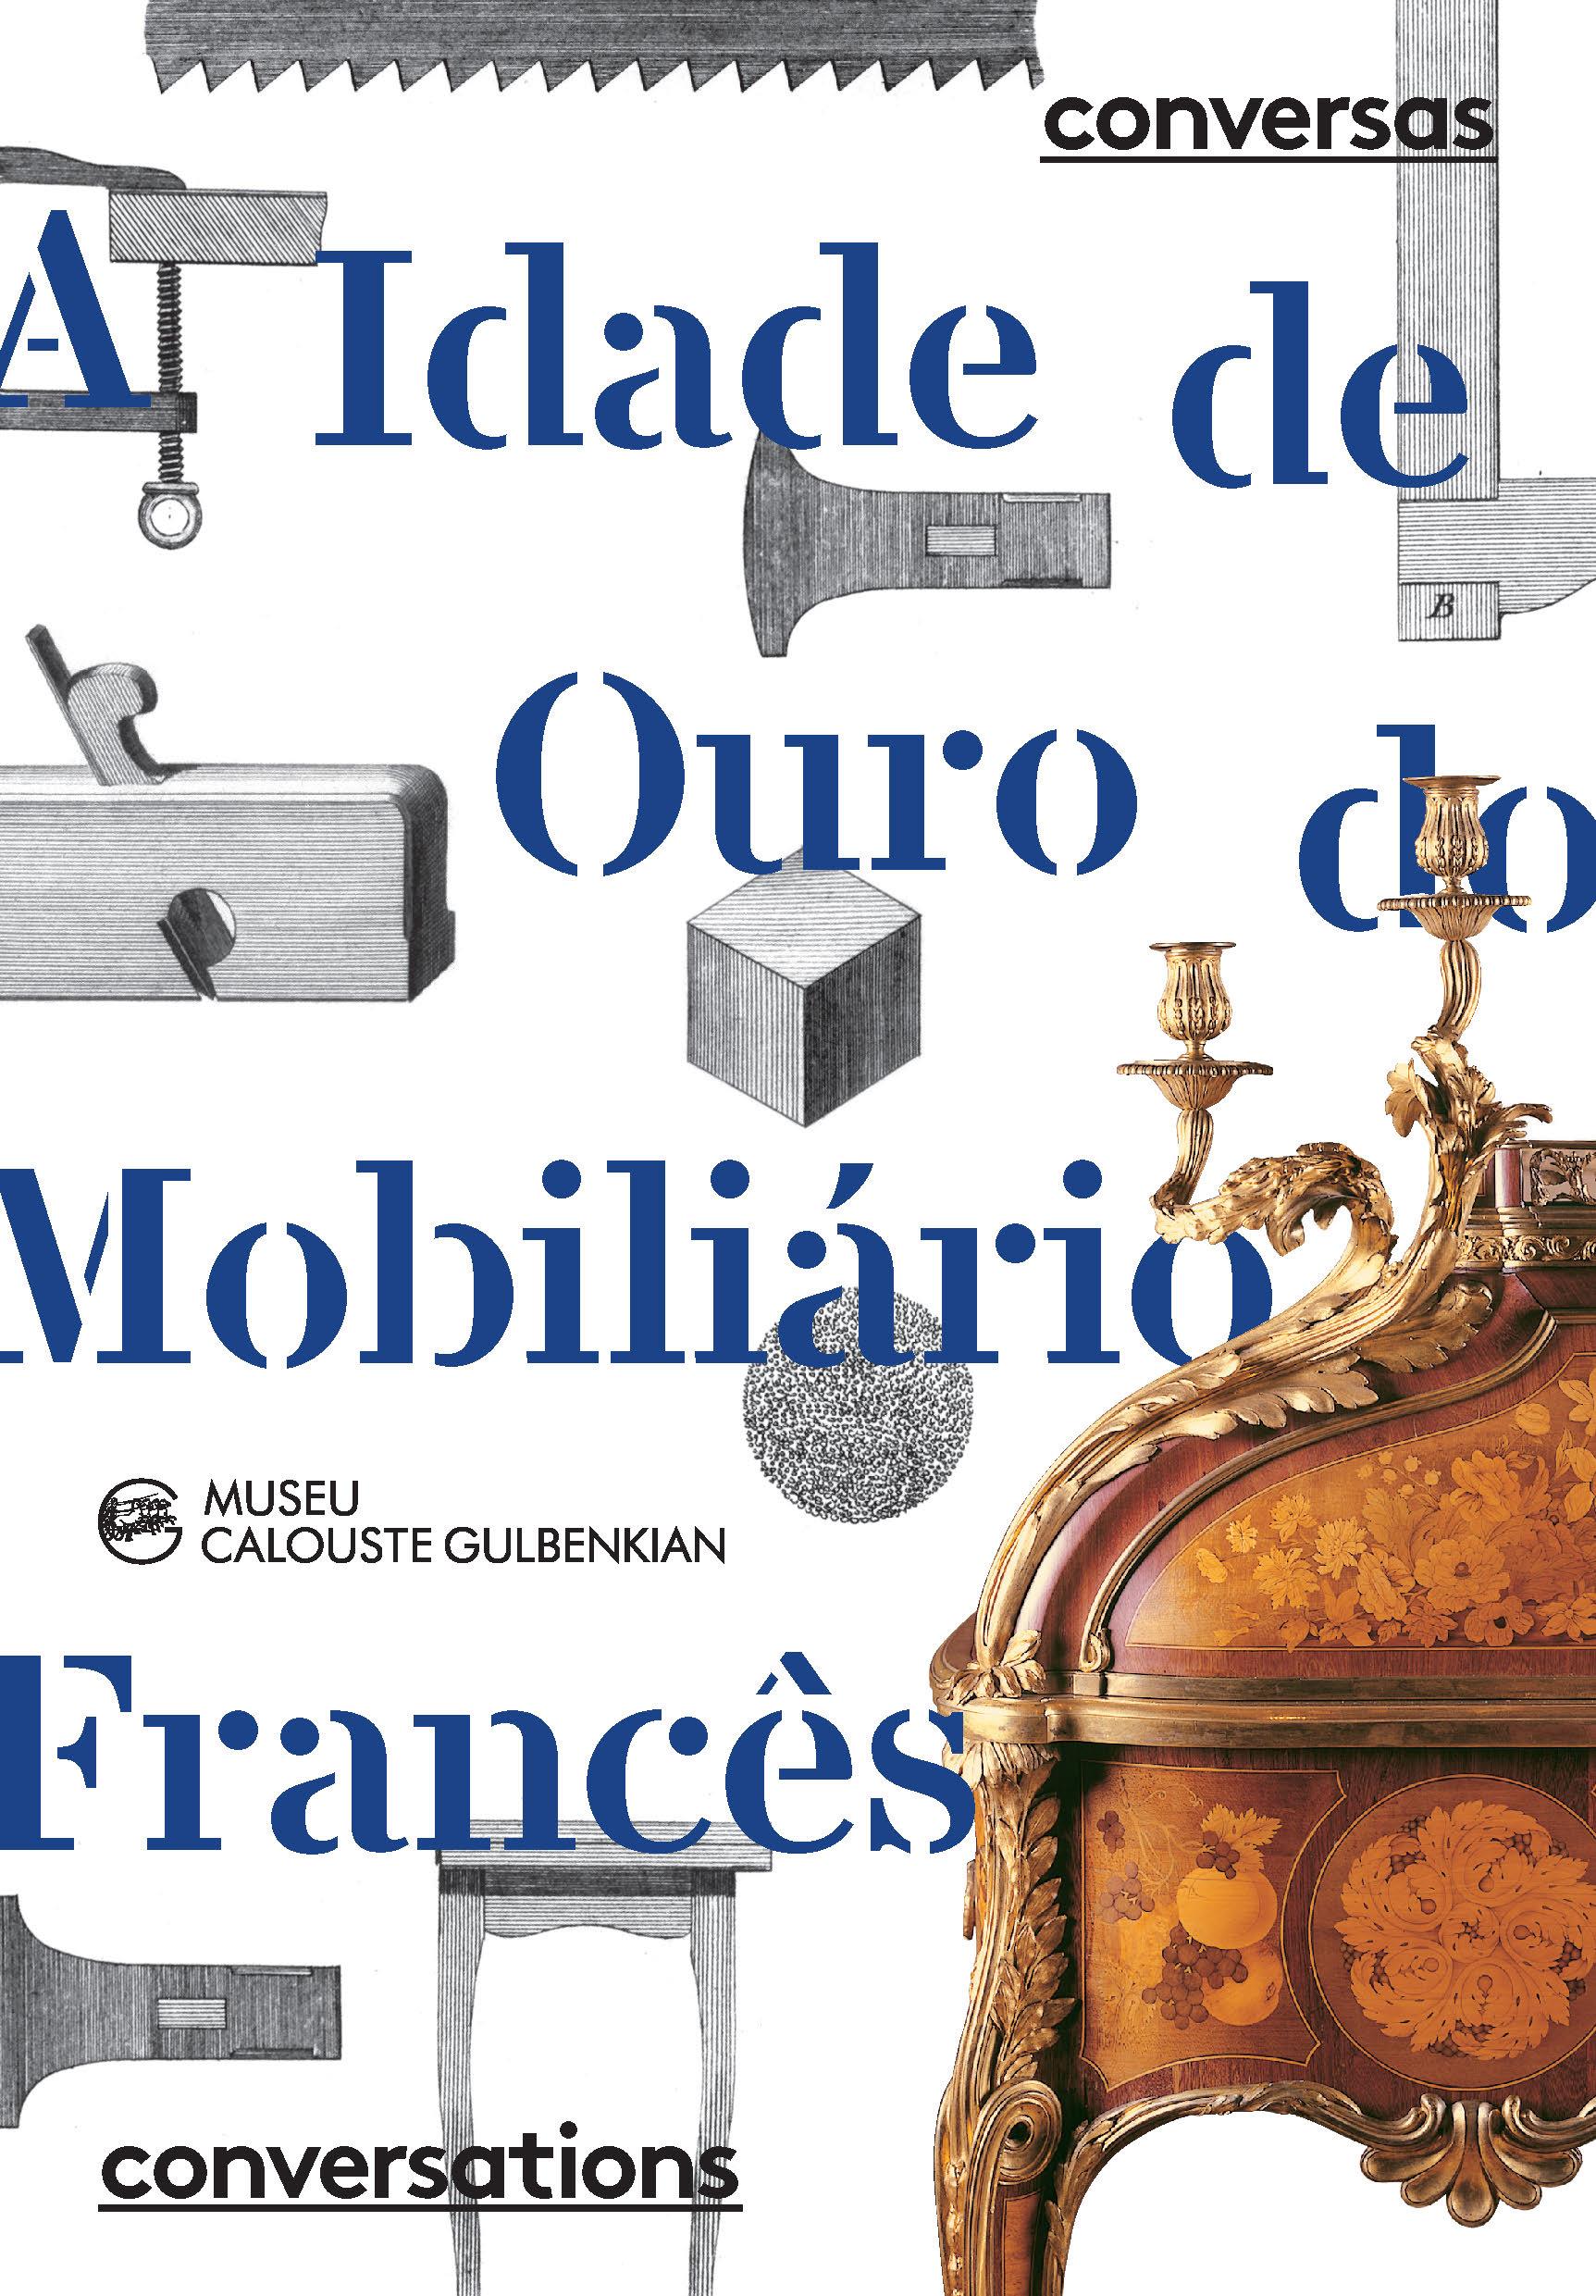 A Idade de Ouro do Mobiliário Francês. Da Oficina ao Palácio